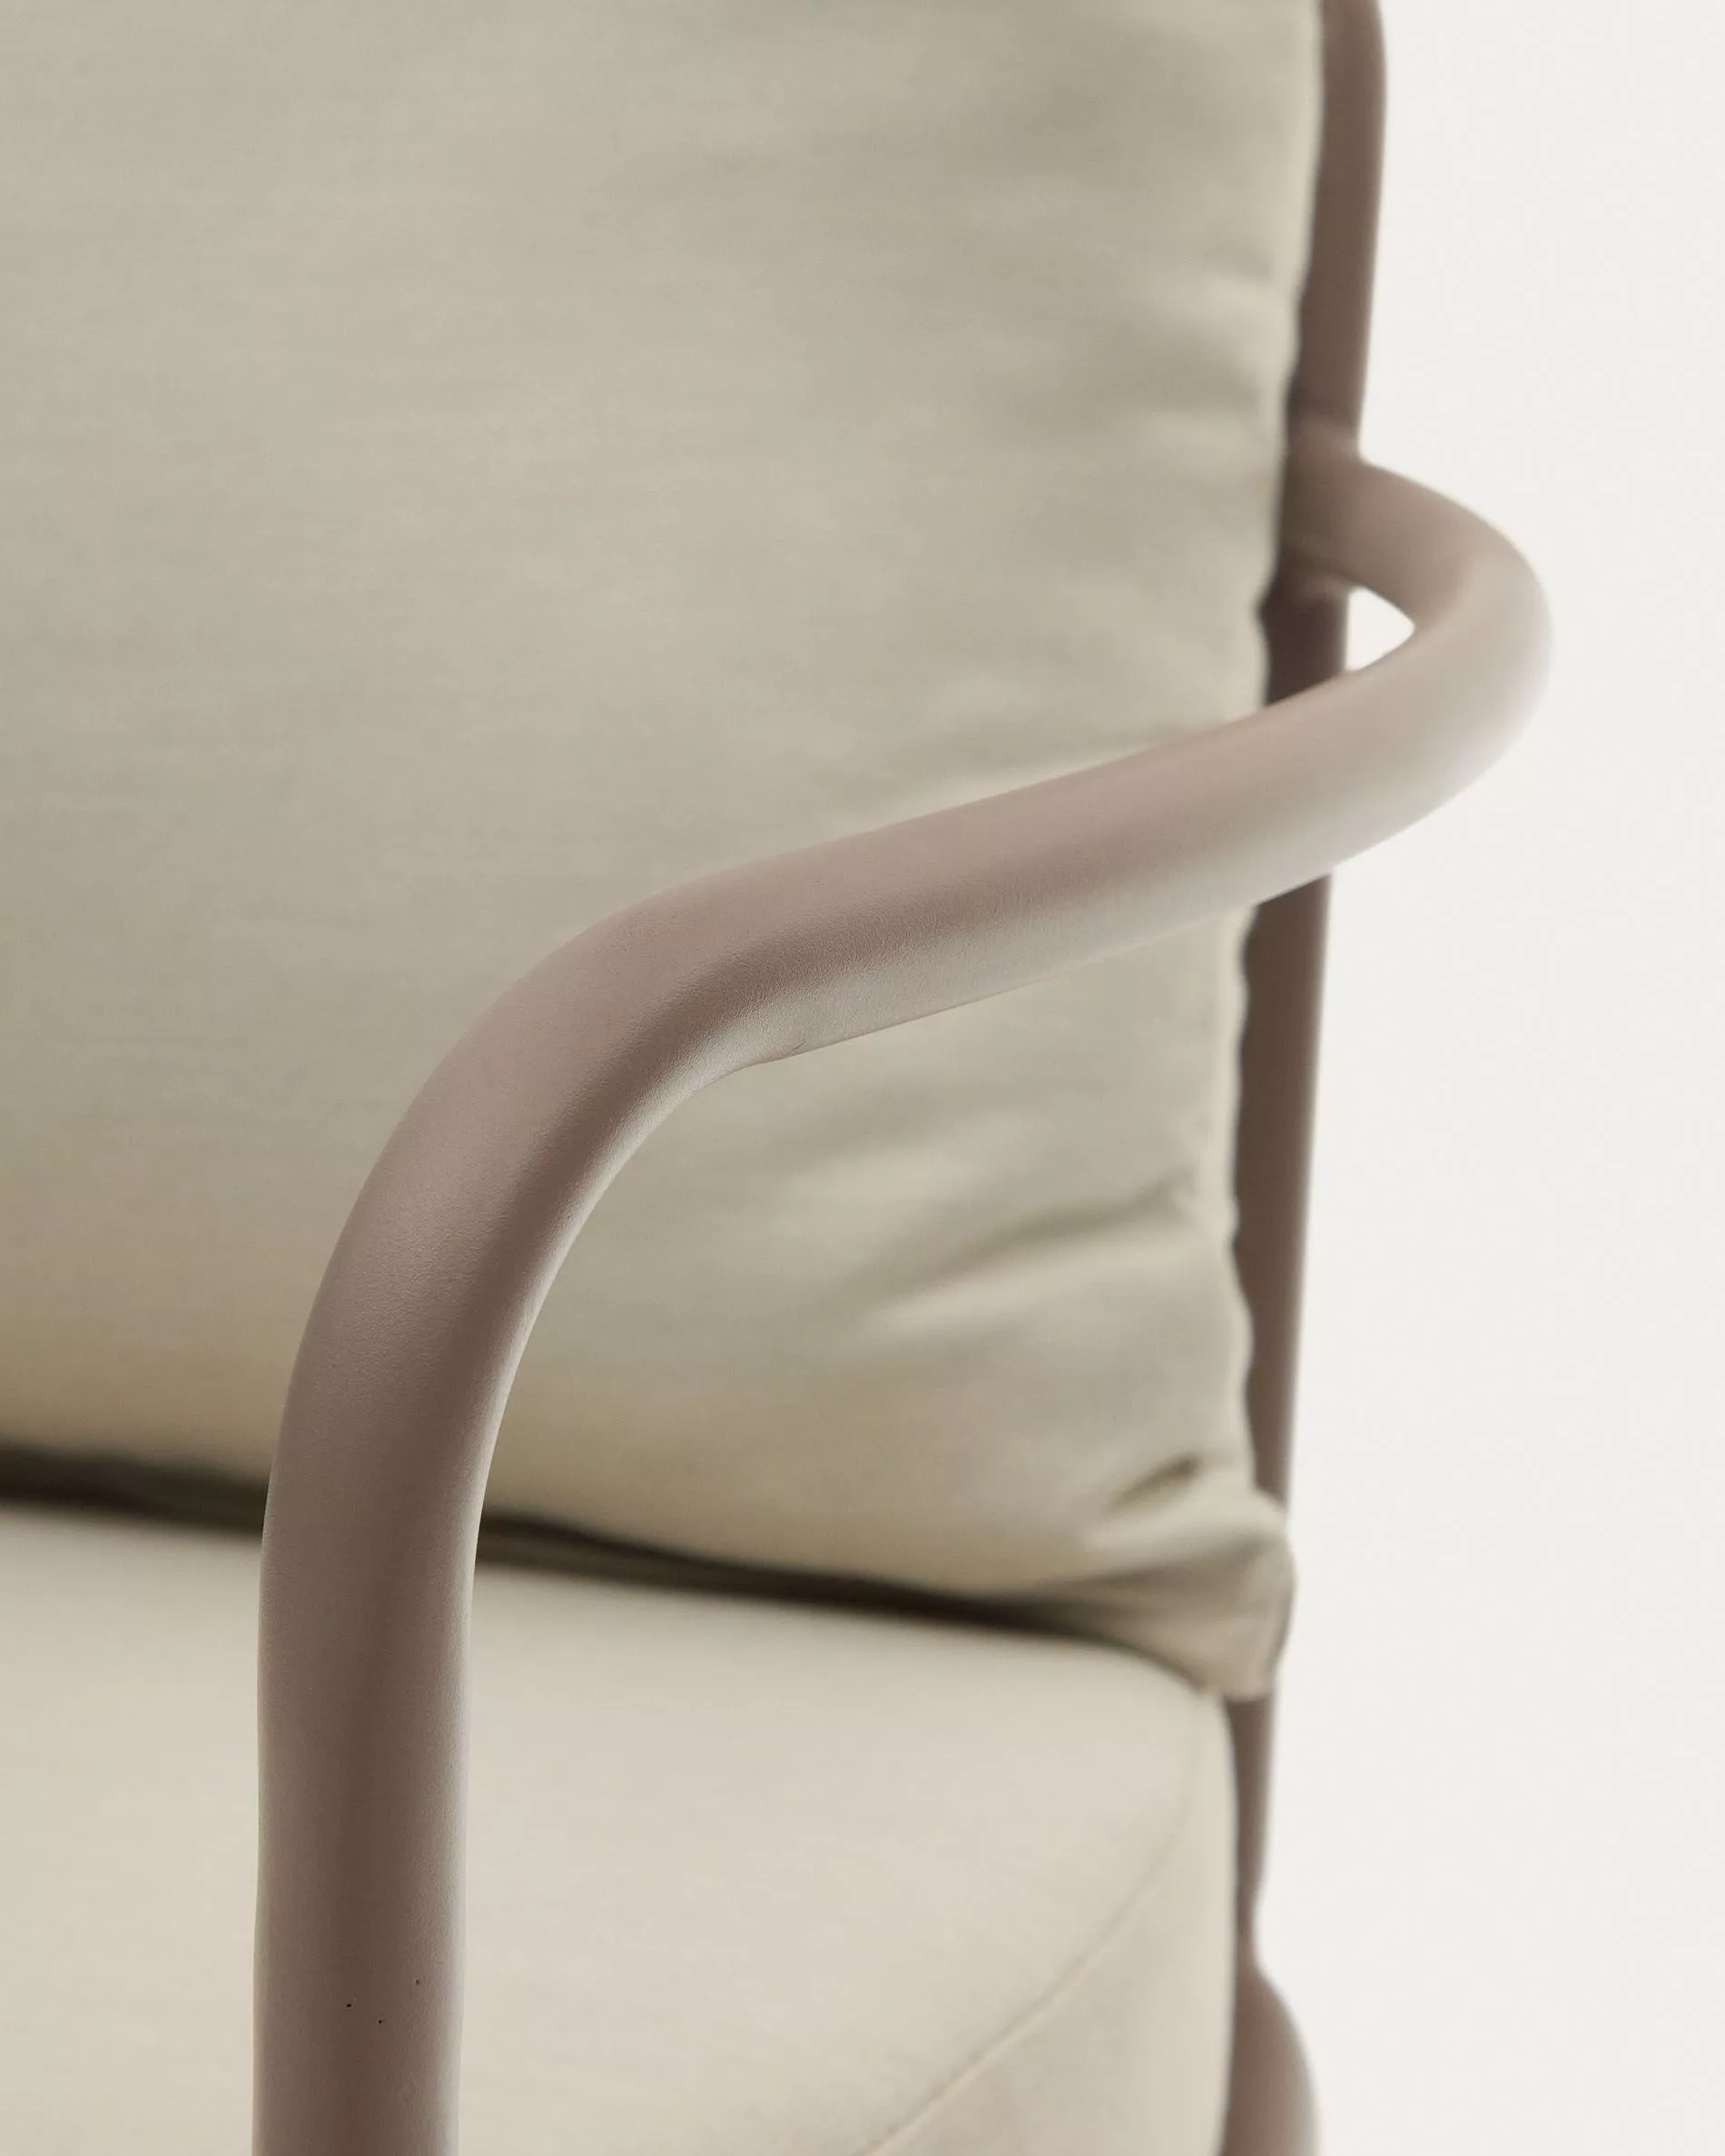 Кресло La Forma Bramant из стали с лиловой отделкой